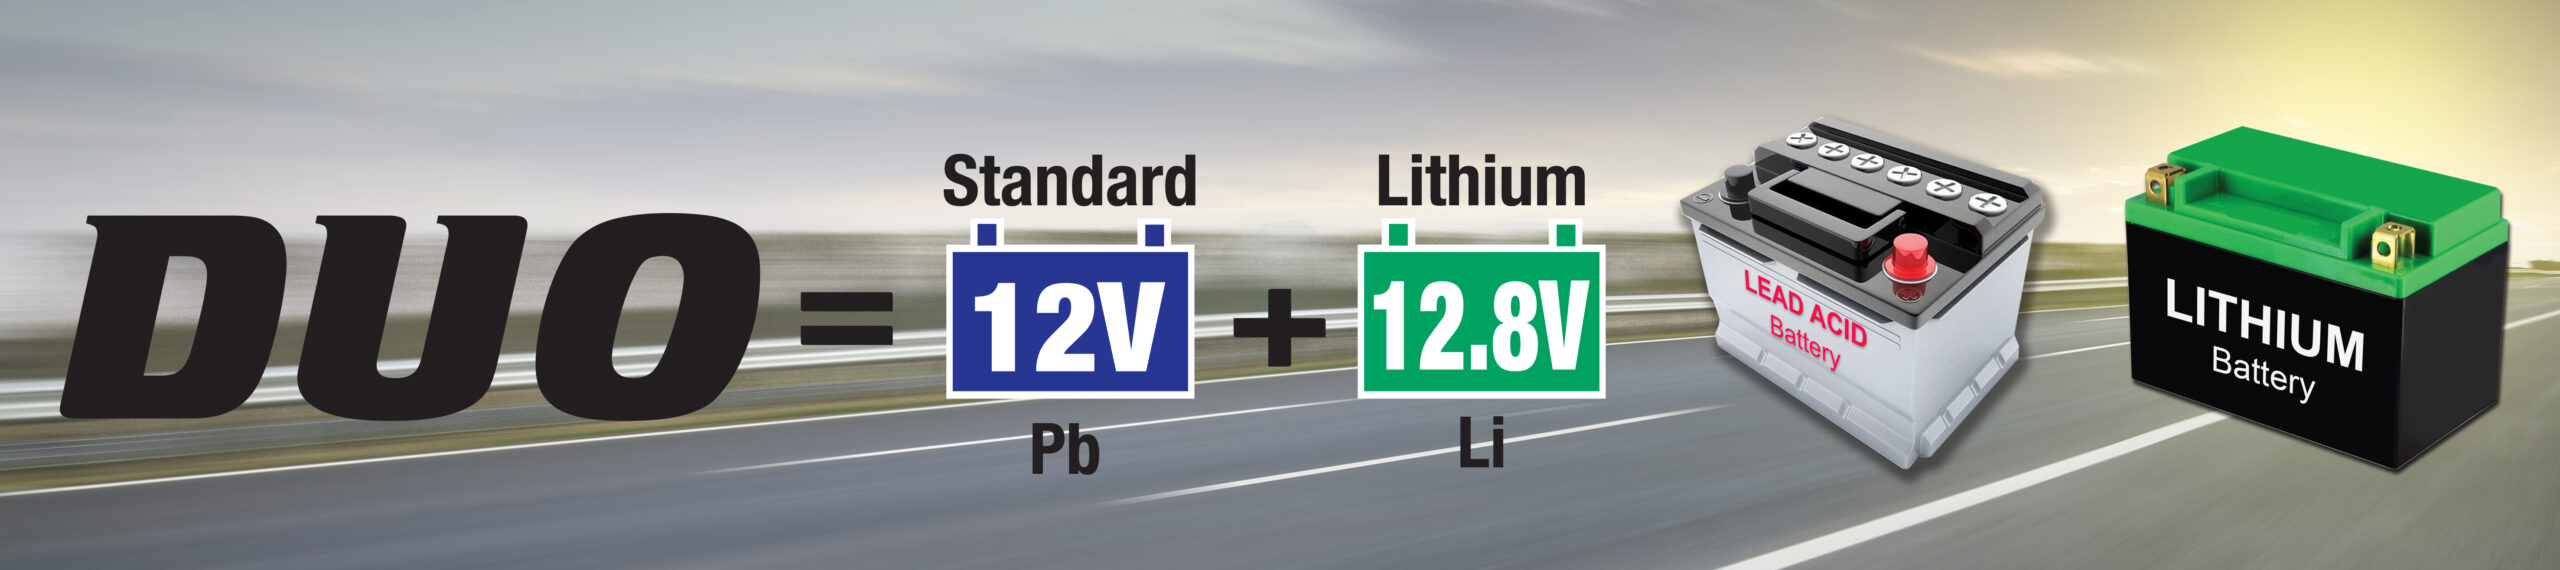 DUO significa estándar 12V Pb y litio 12.8V Li